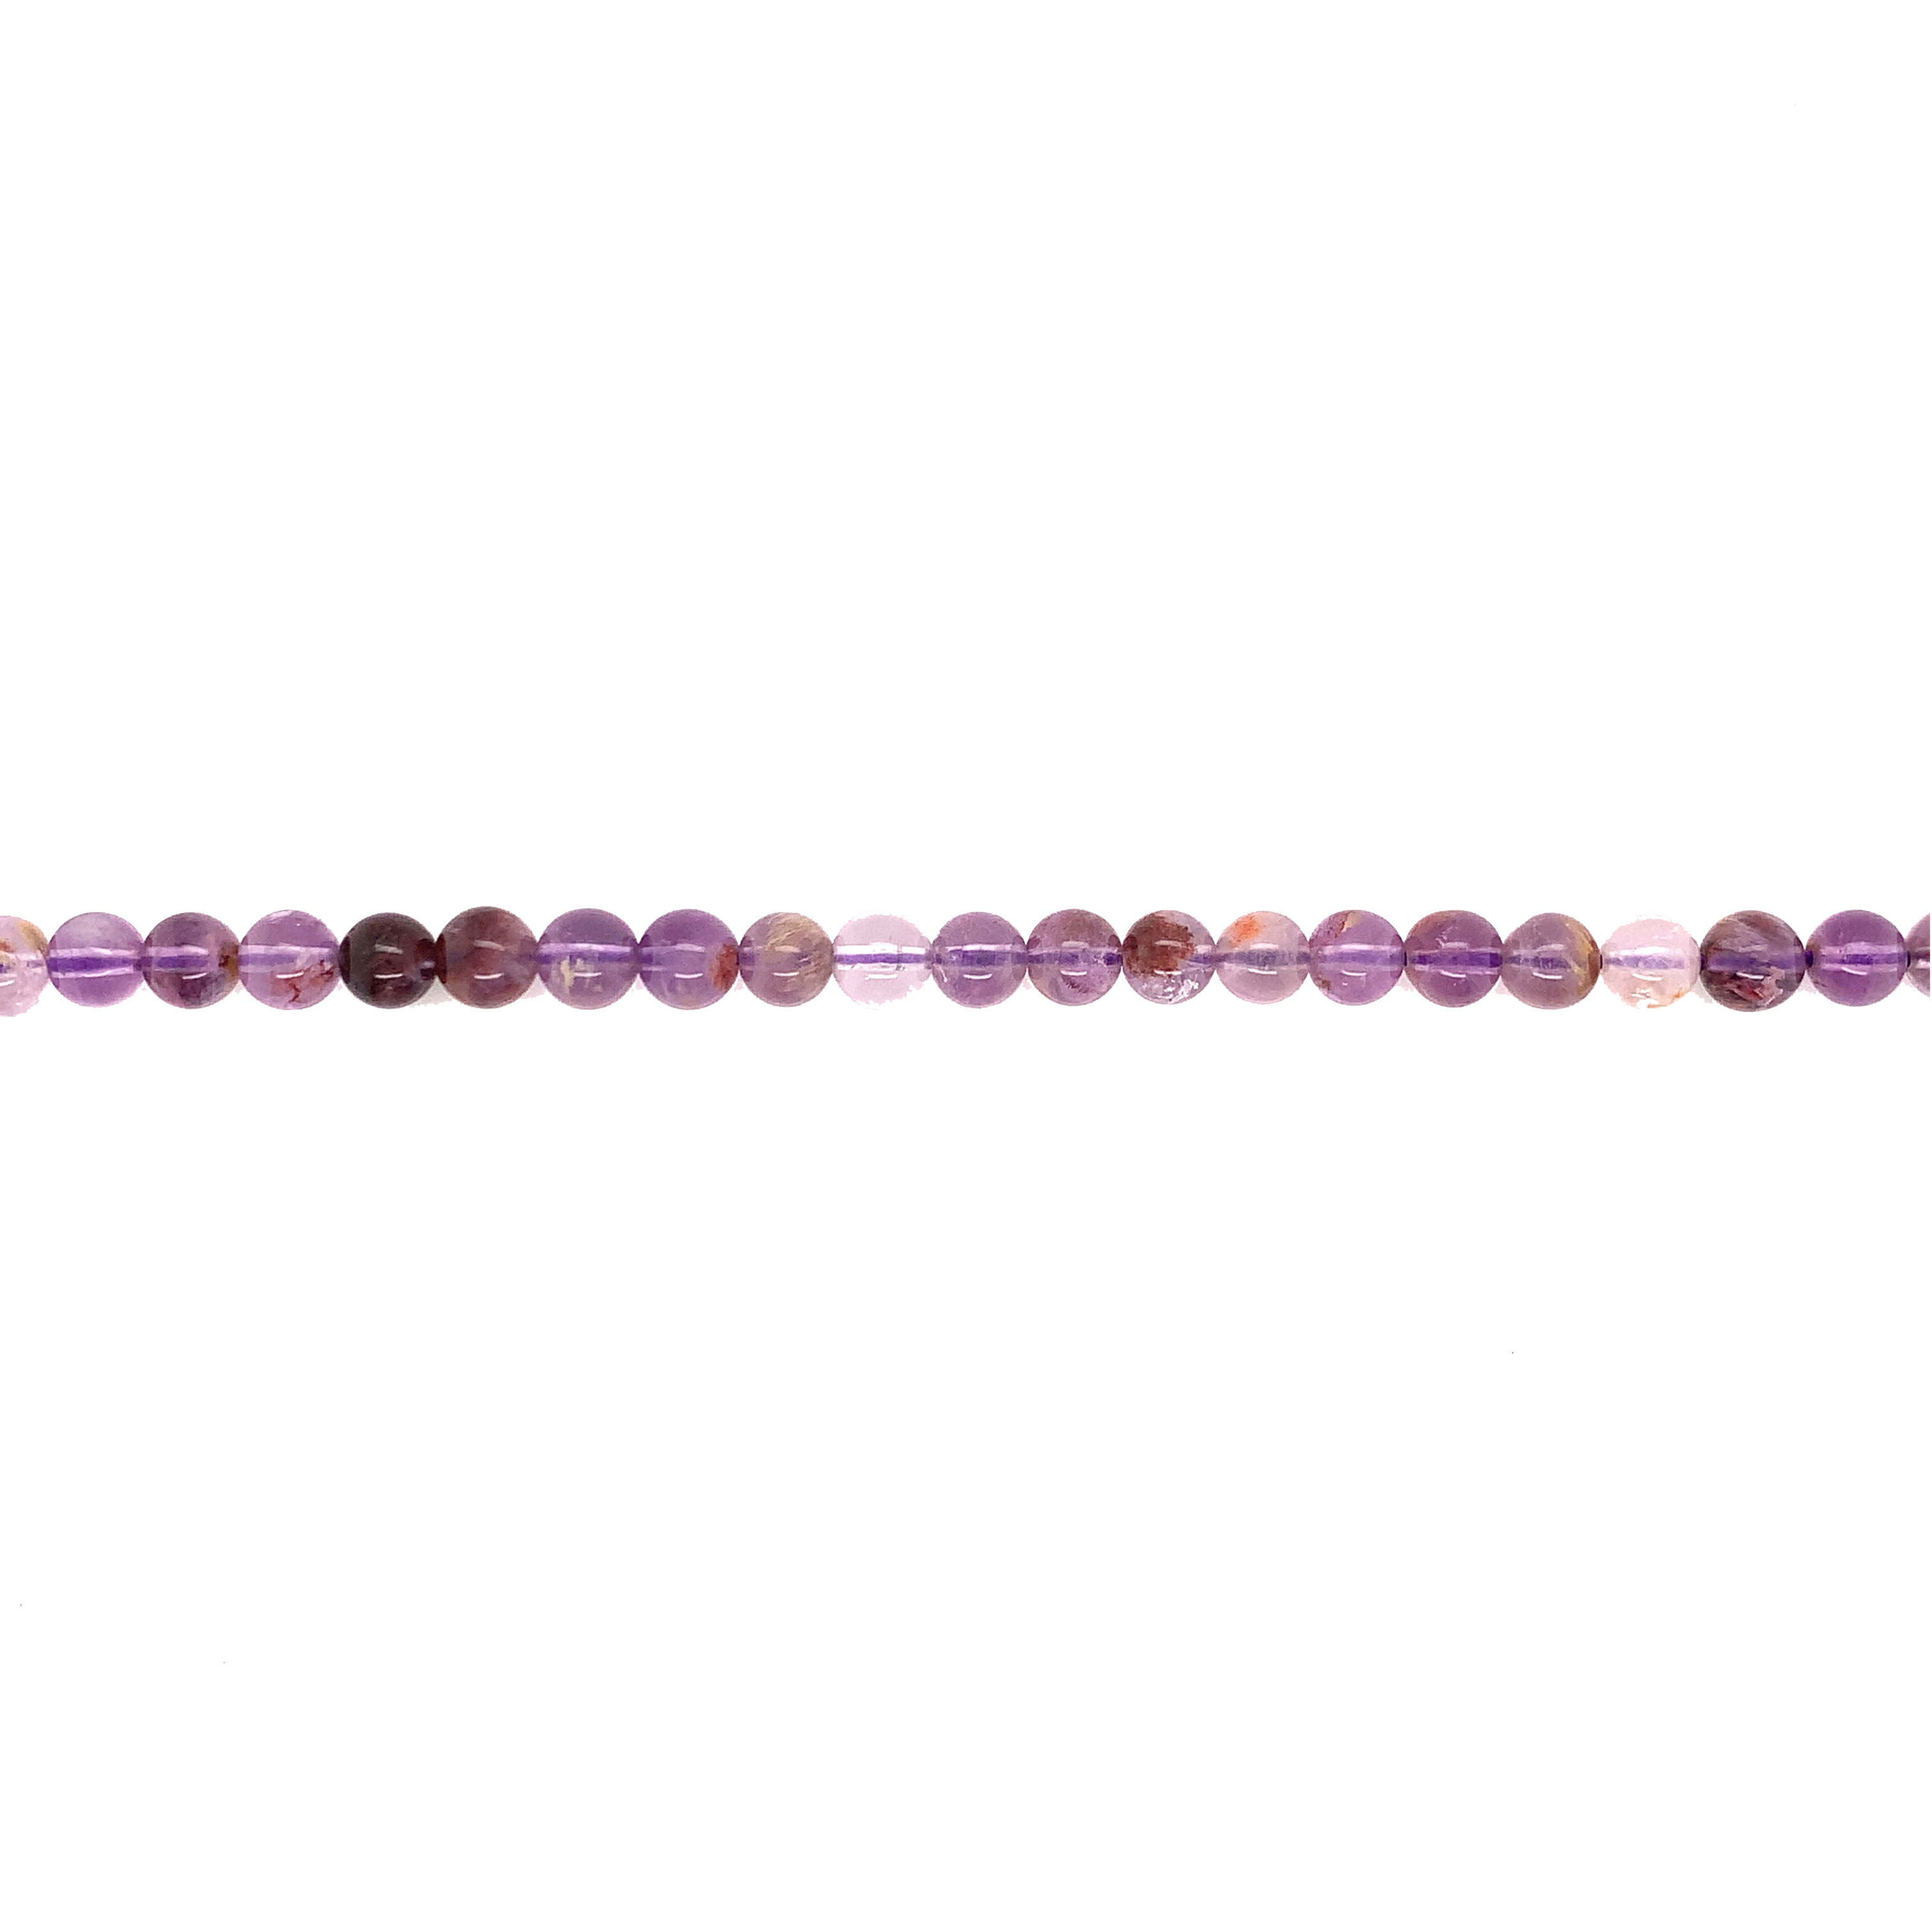 6mm Super 7 Gemstone Beads - Round